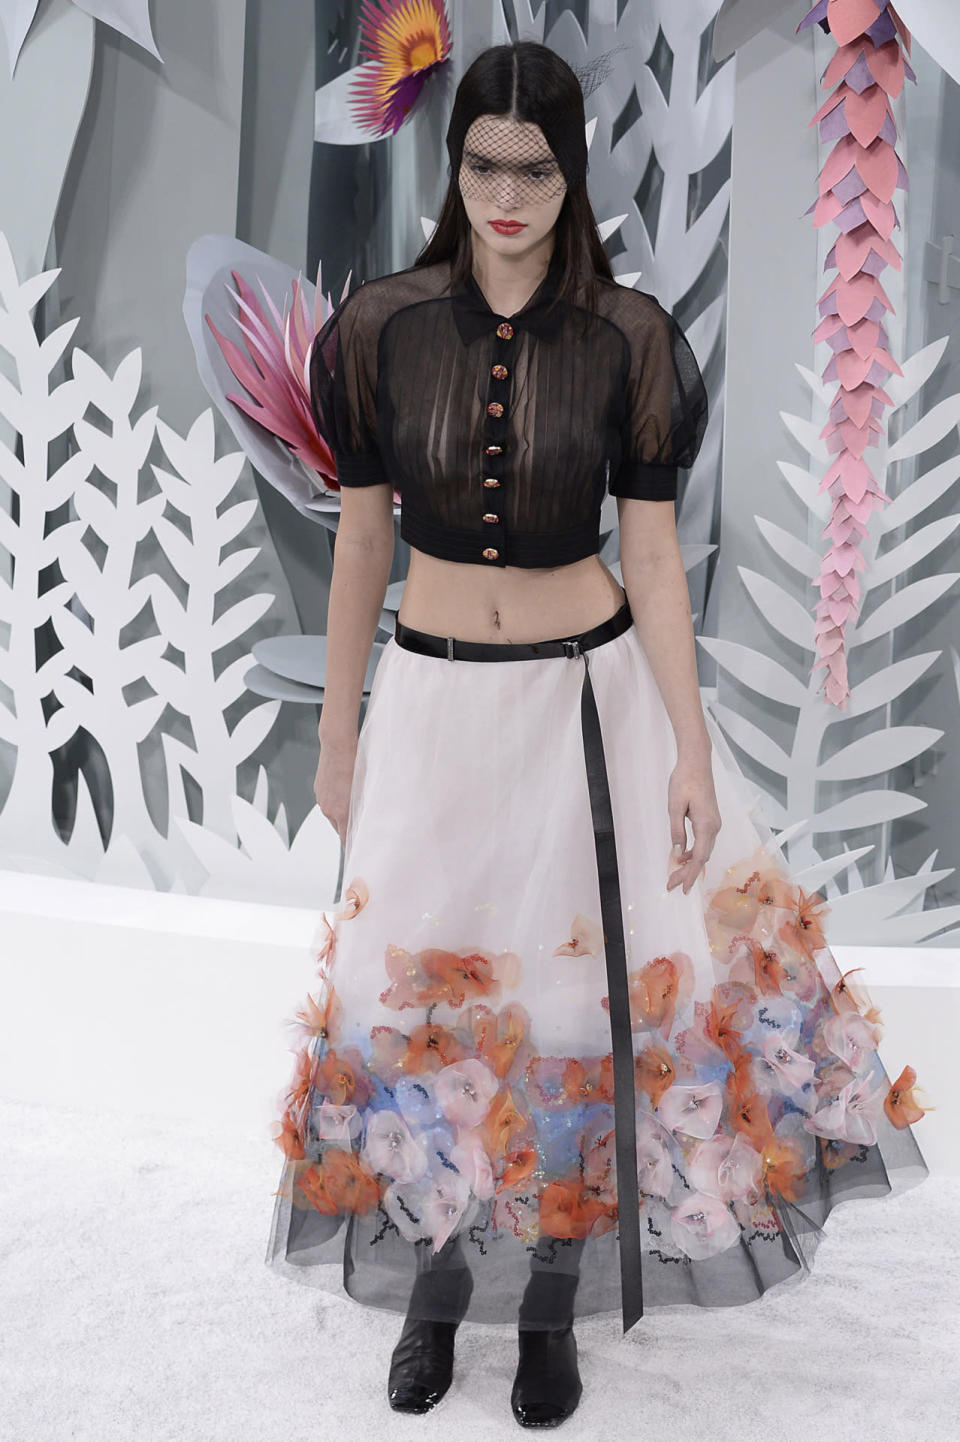 La nouvelle star des podiums Kendall Jenner a défilé pour Chanel en février 2015. Les matières vaporeuses apportent beaucoup de grâce à la jeune fille. L’opposition entre le noir et le blanc est adoucie par les fleurs cousues sur le bas de la robe. 